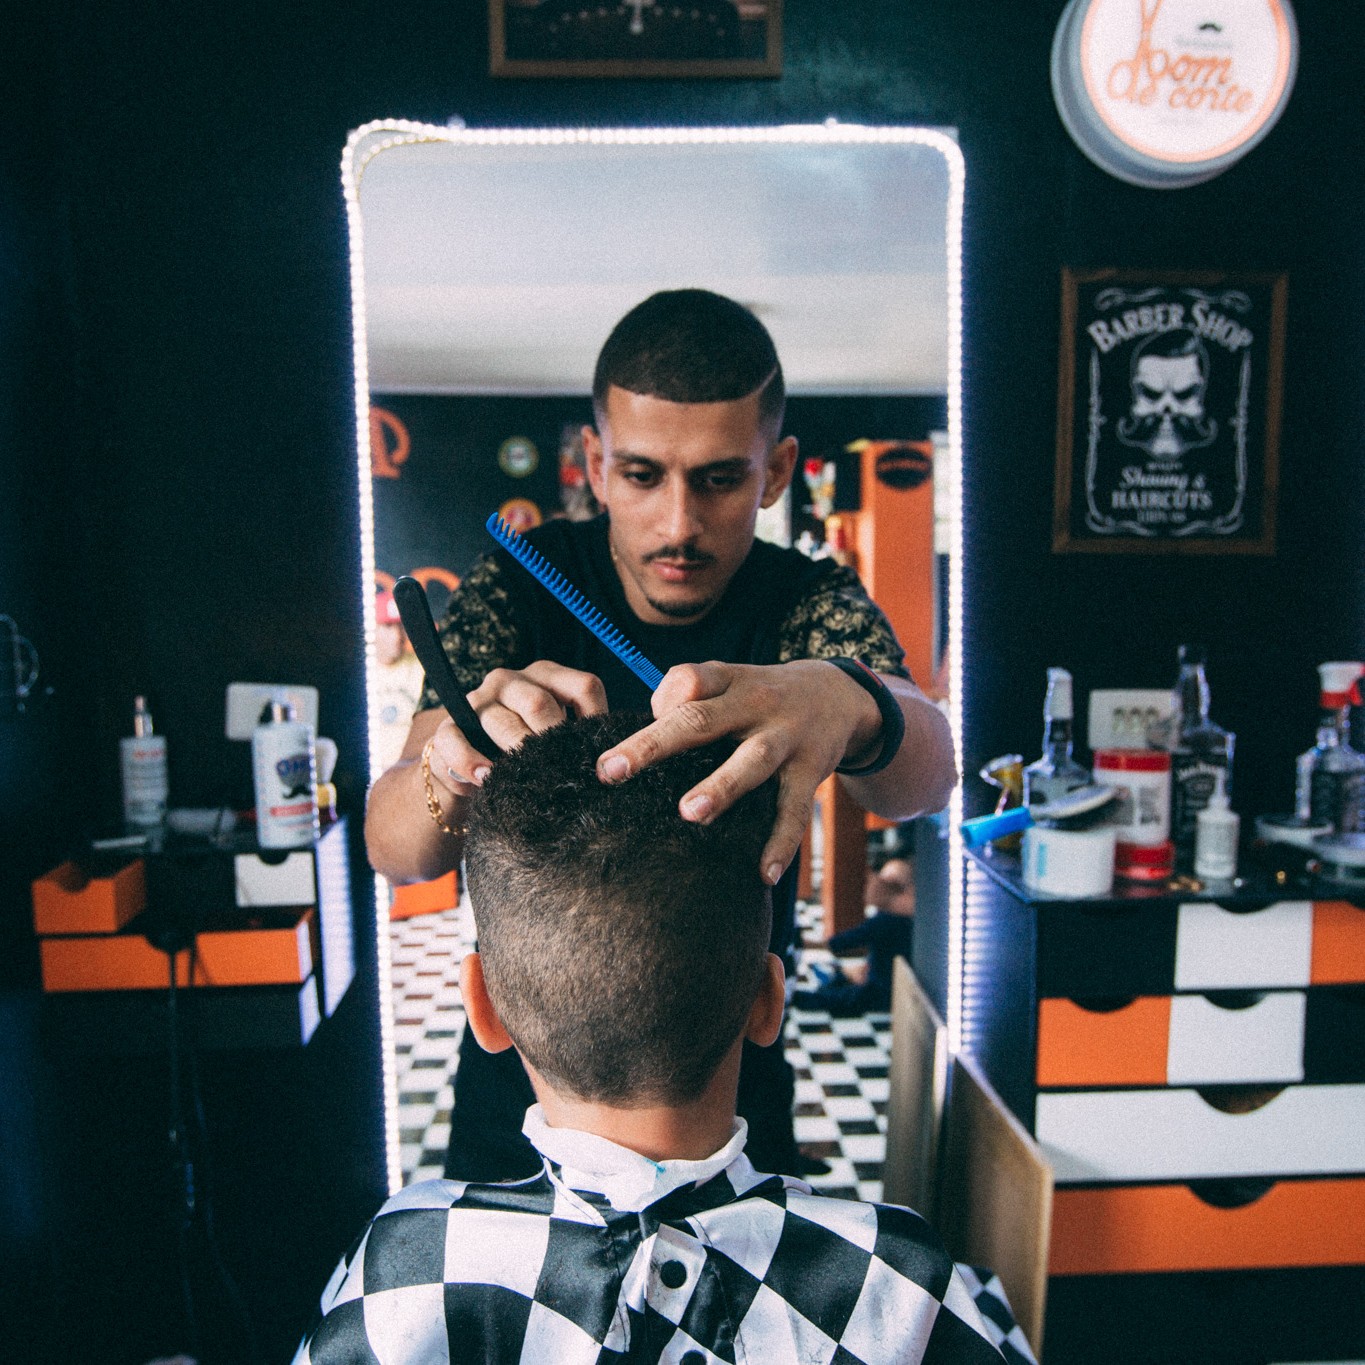 Sucesso no Twitter, barbeiro do corte blindado vira estrela de reality show  · Notícias da TV